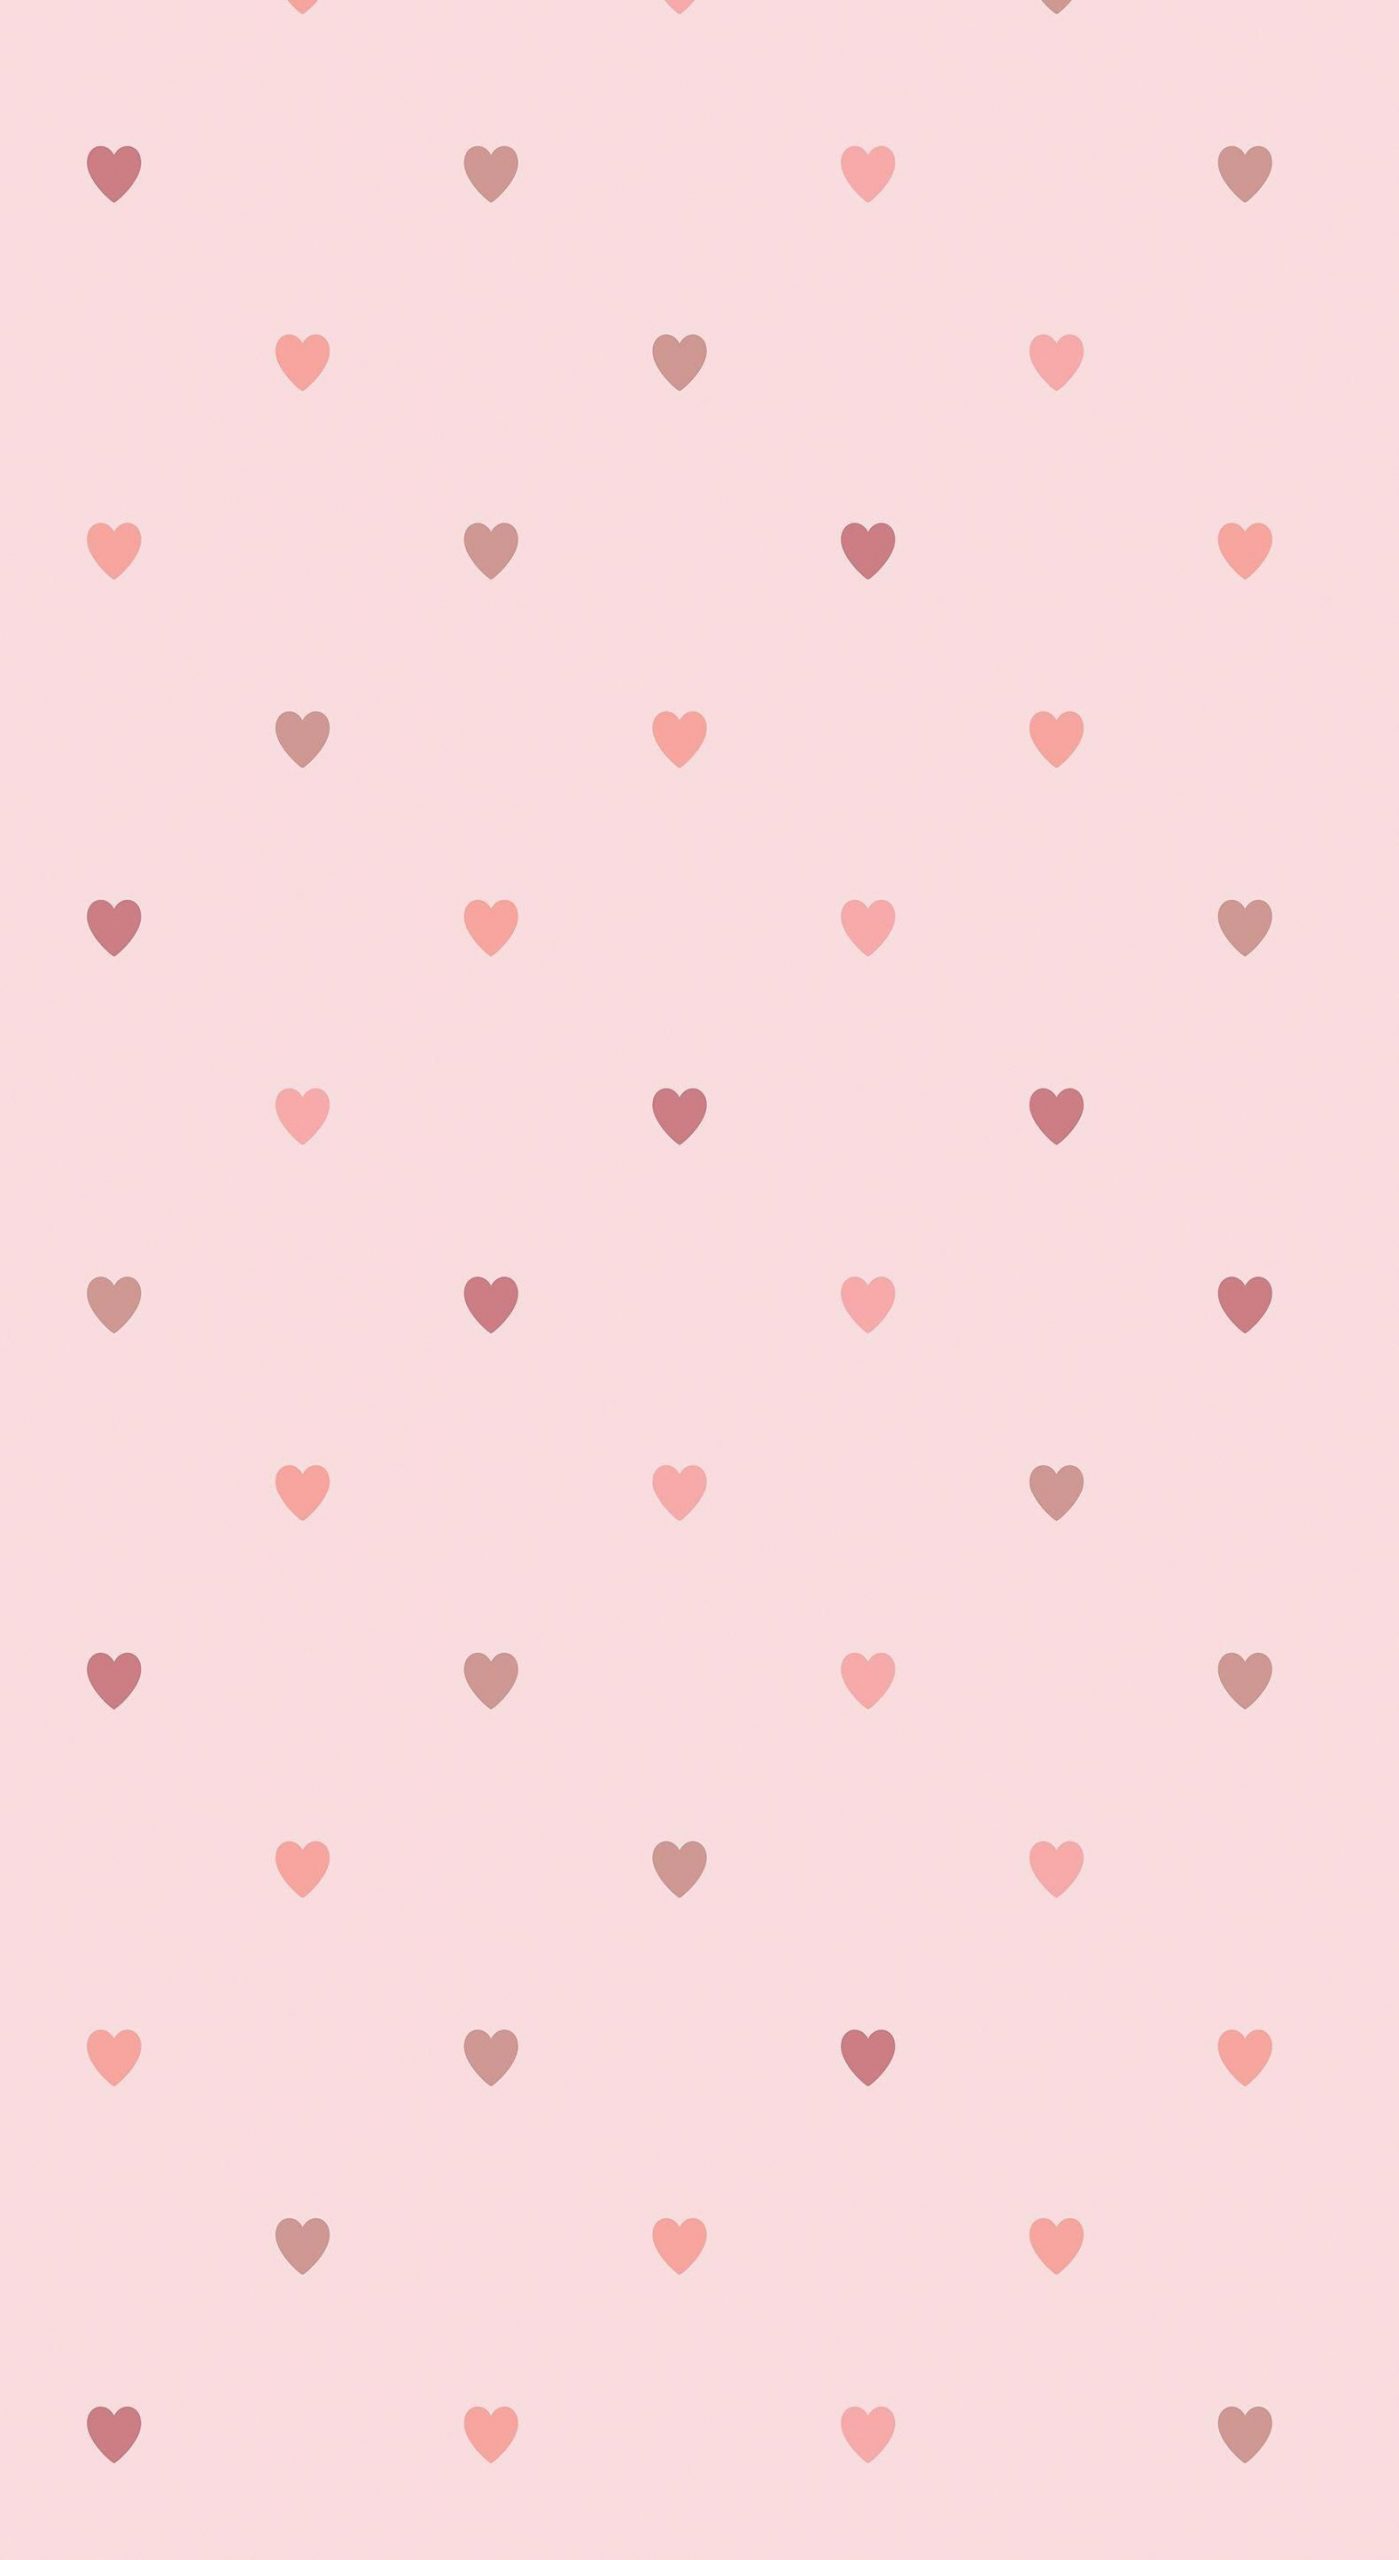 heart wallpaper hd 4k (39)